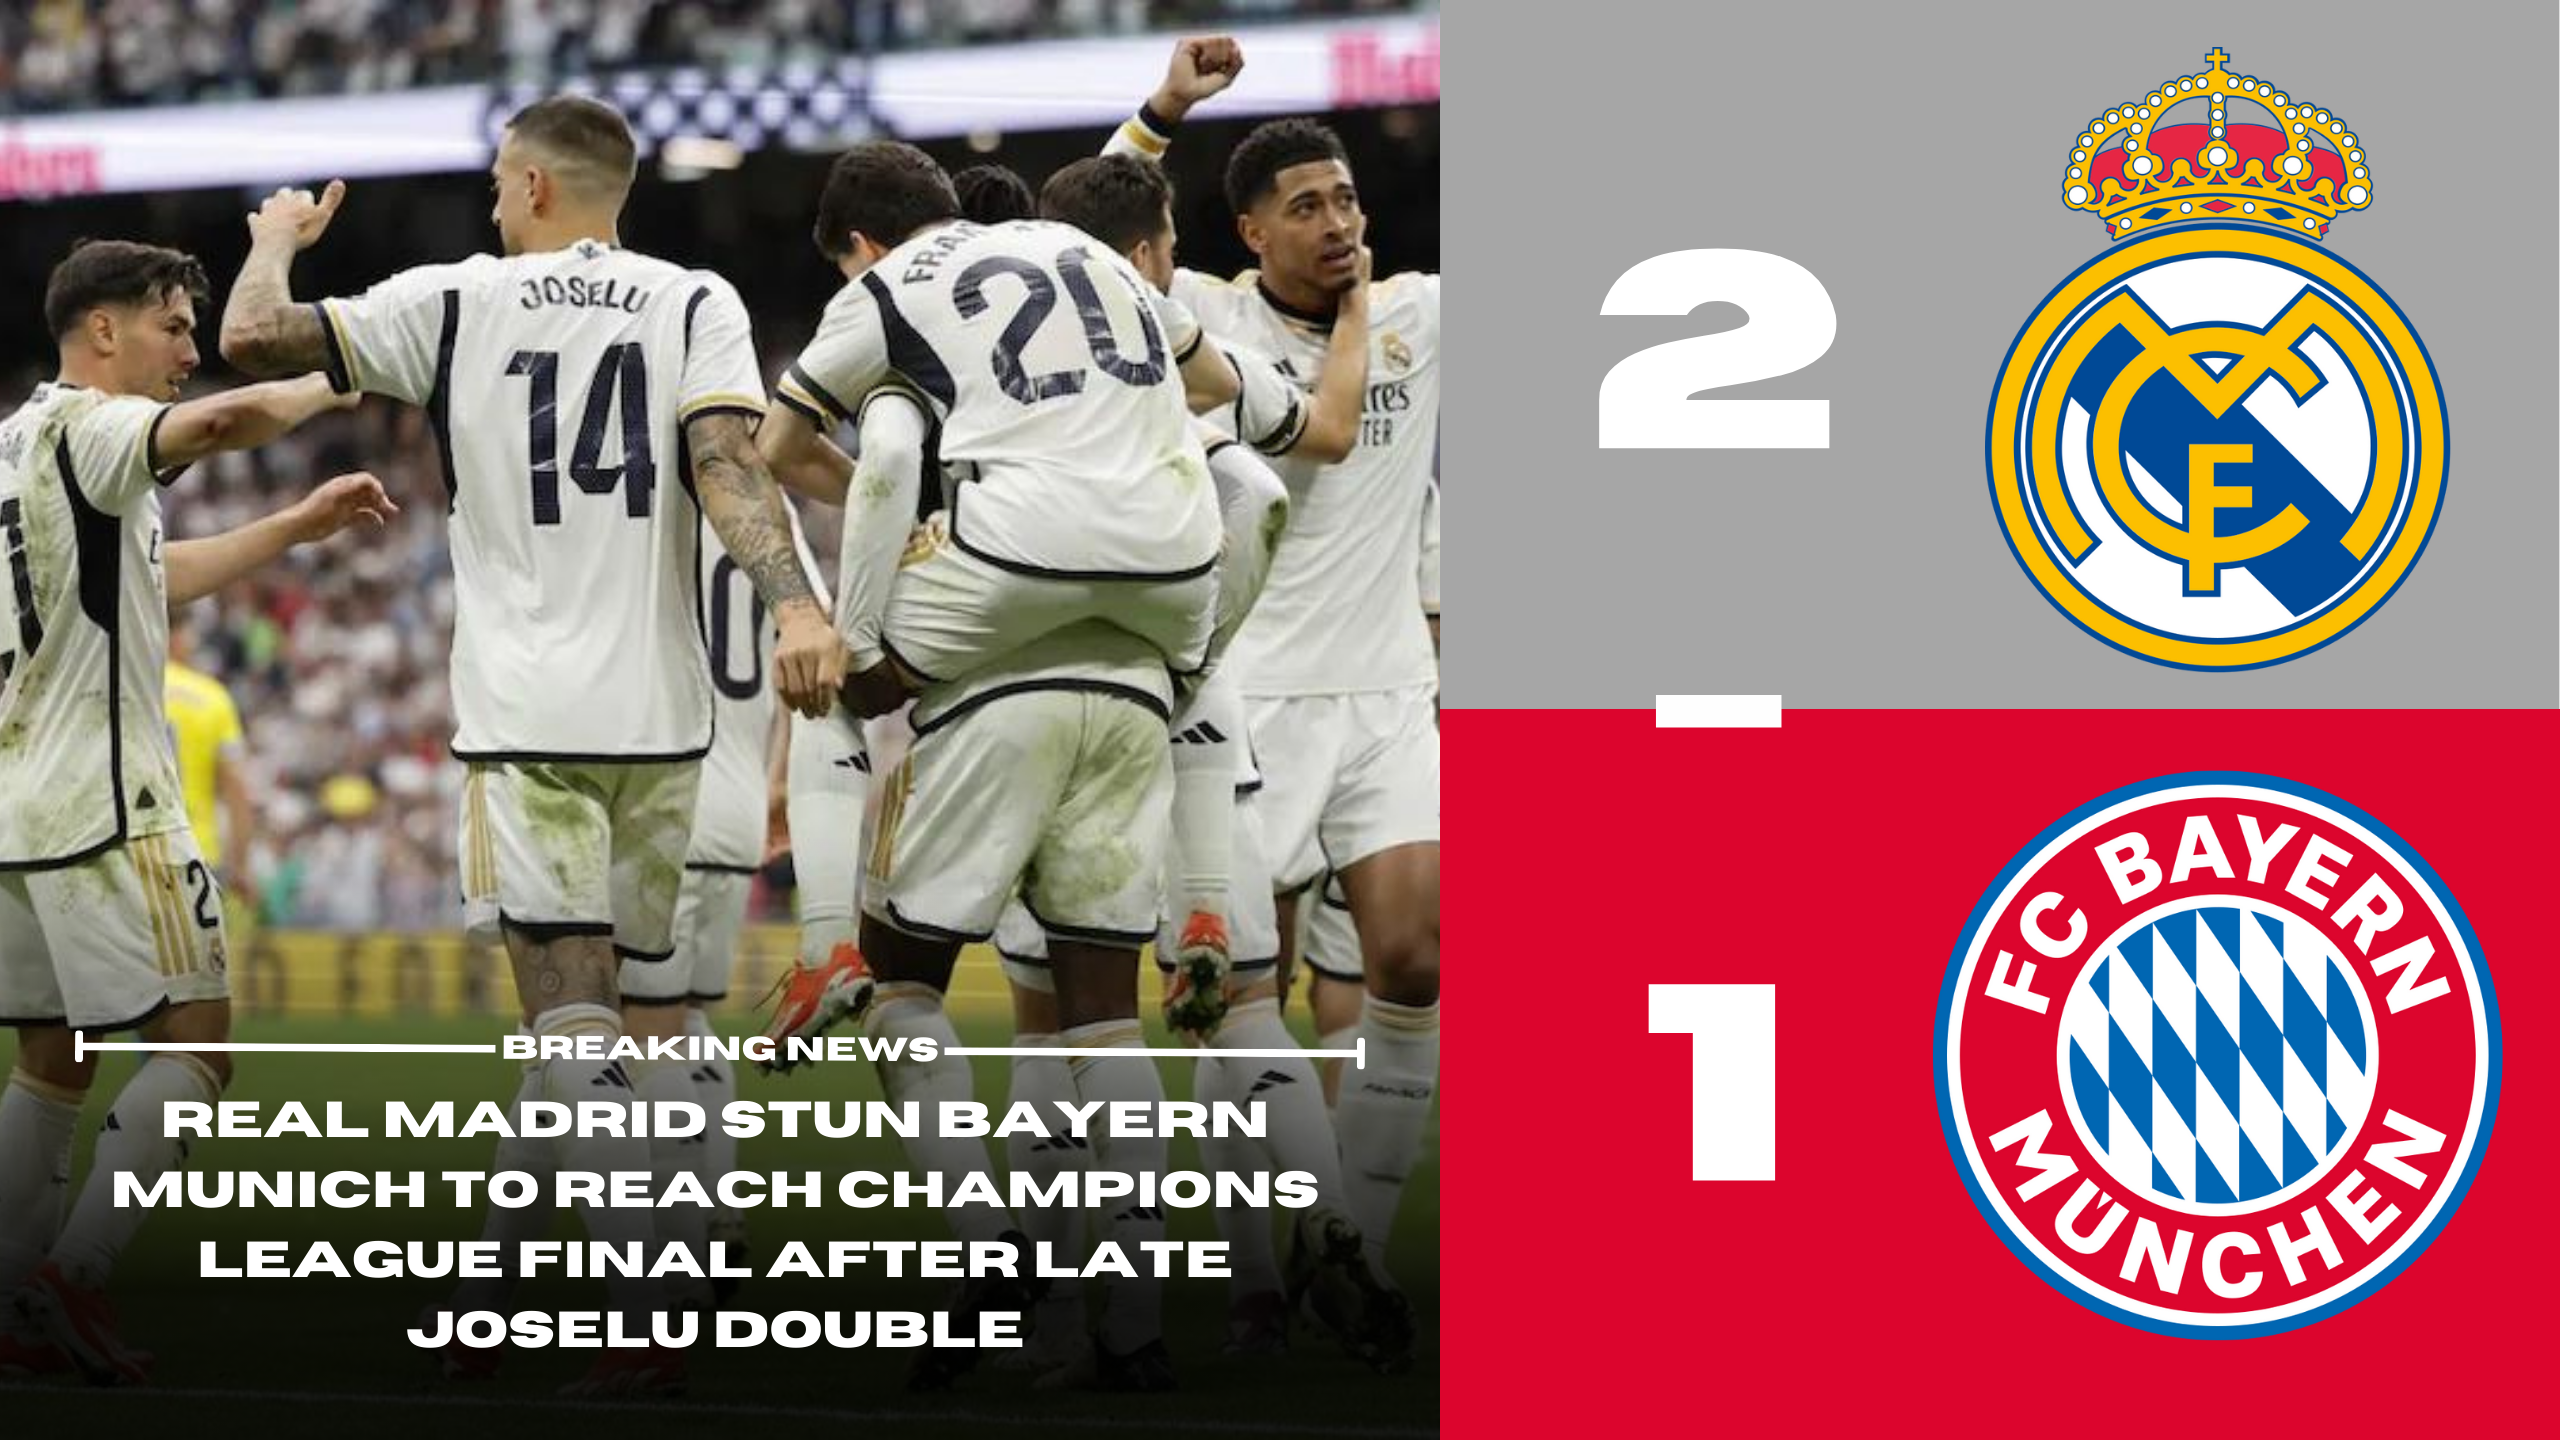 Real Madrid 2 - 1 Bayern Munich | Real Madrid stun Bayern Munich to reach Champions League final after late Joselu double